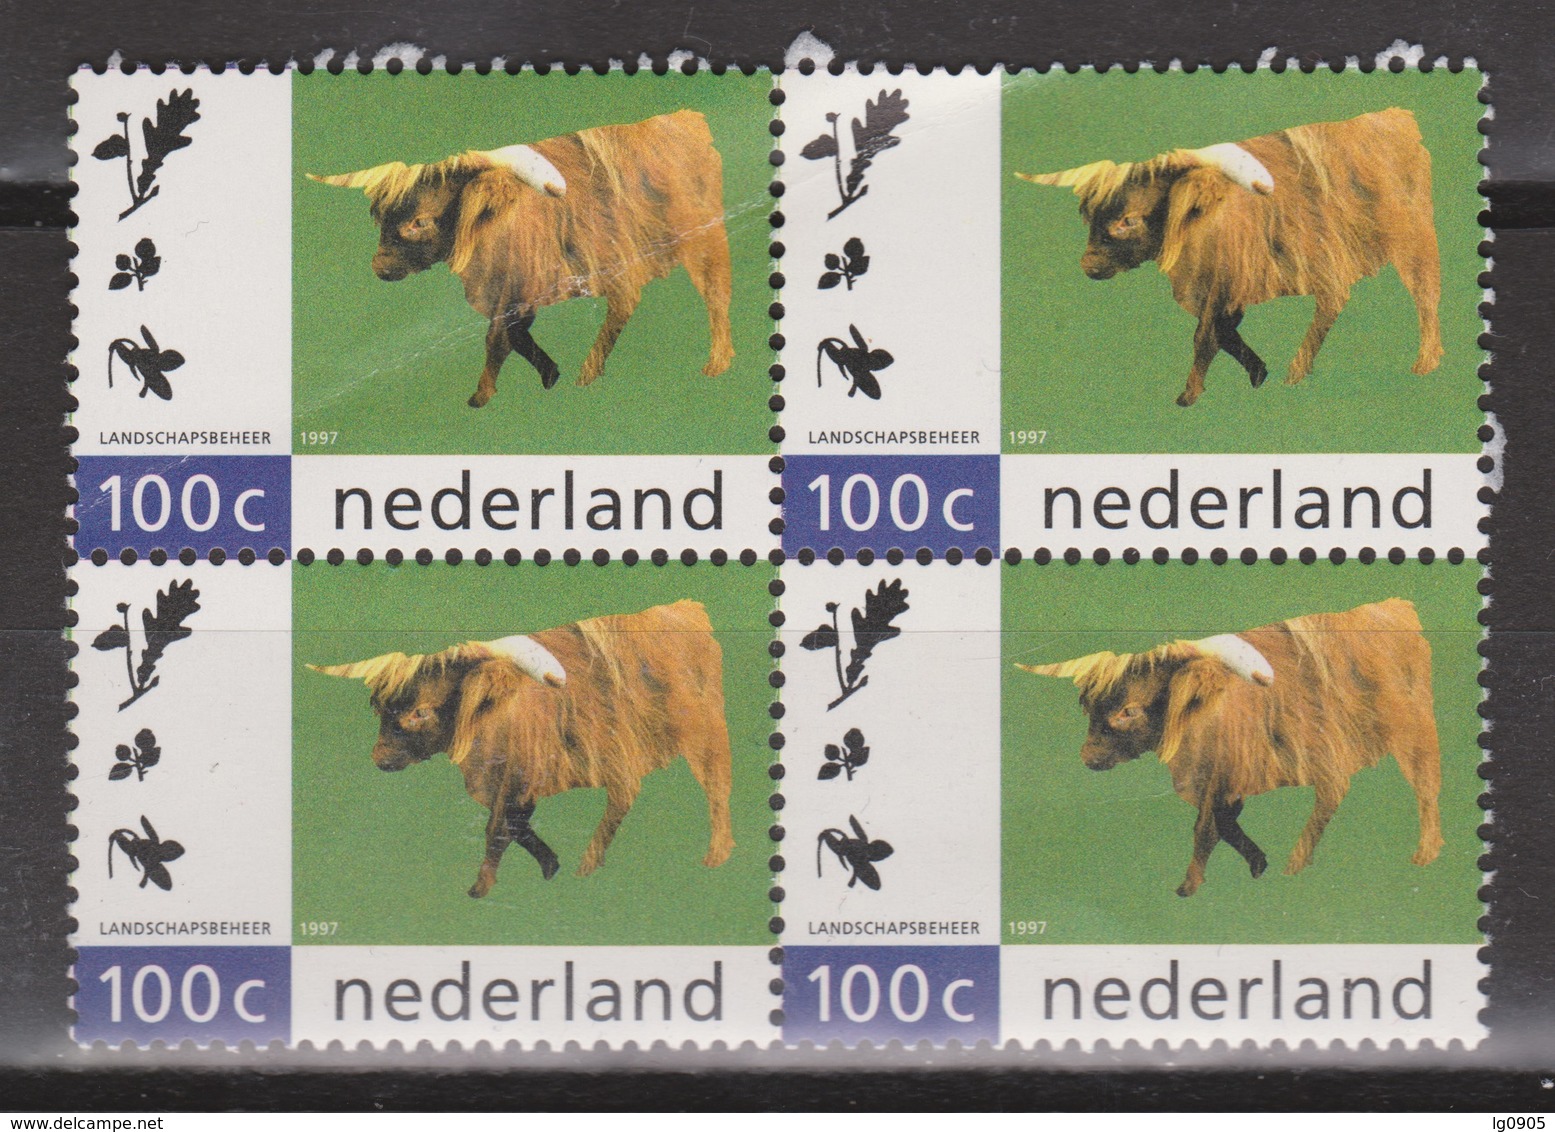 Netherlands Nederland Niederlande Pays Bas 1712 MNH Sheet ; Rund, Cow, Vache, Vacha Schotse Hooglander - Koeien